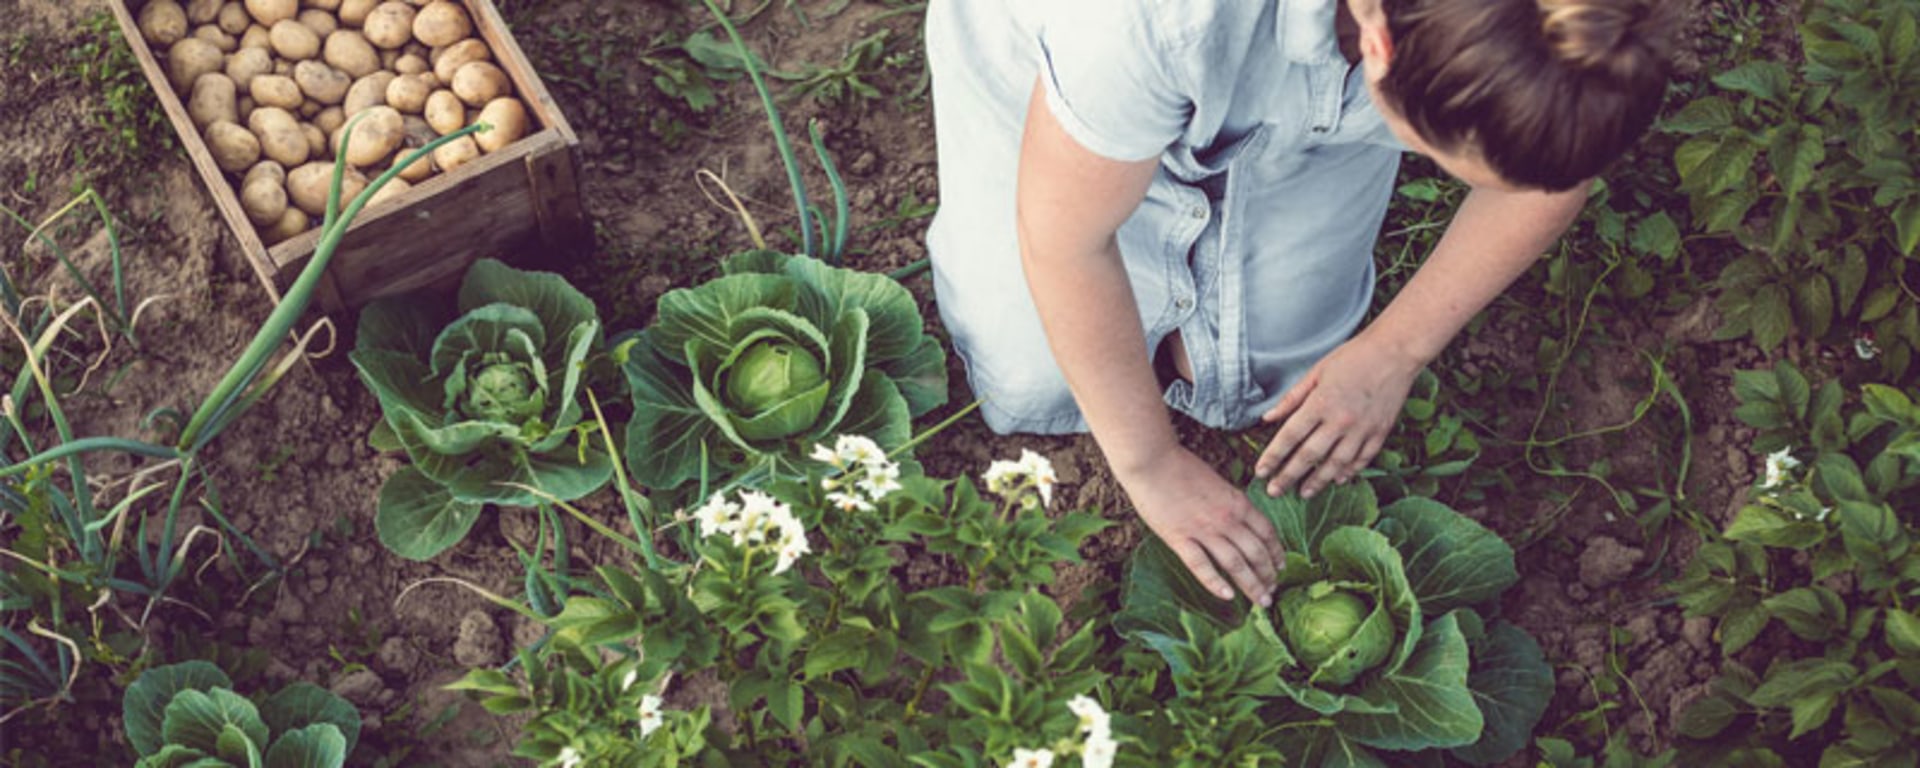 Eine Frau erntet an einem sonnigen Tag frisches Gemüse aus einem Garten.